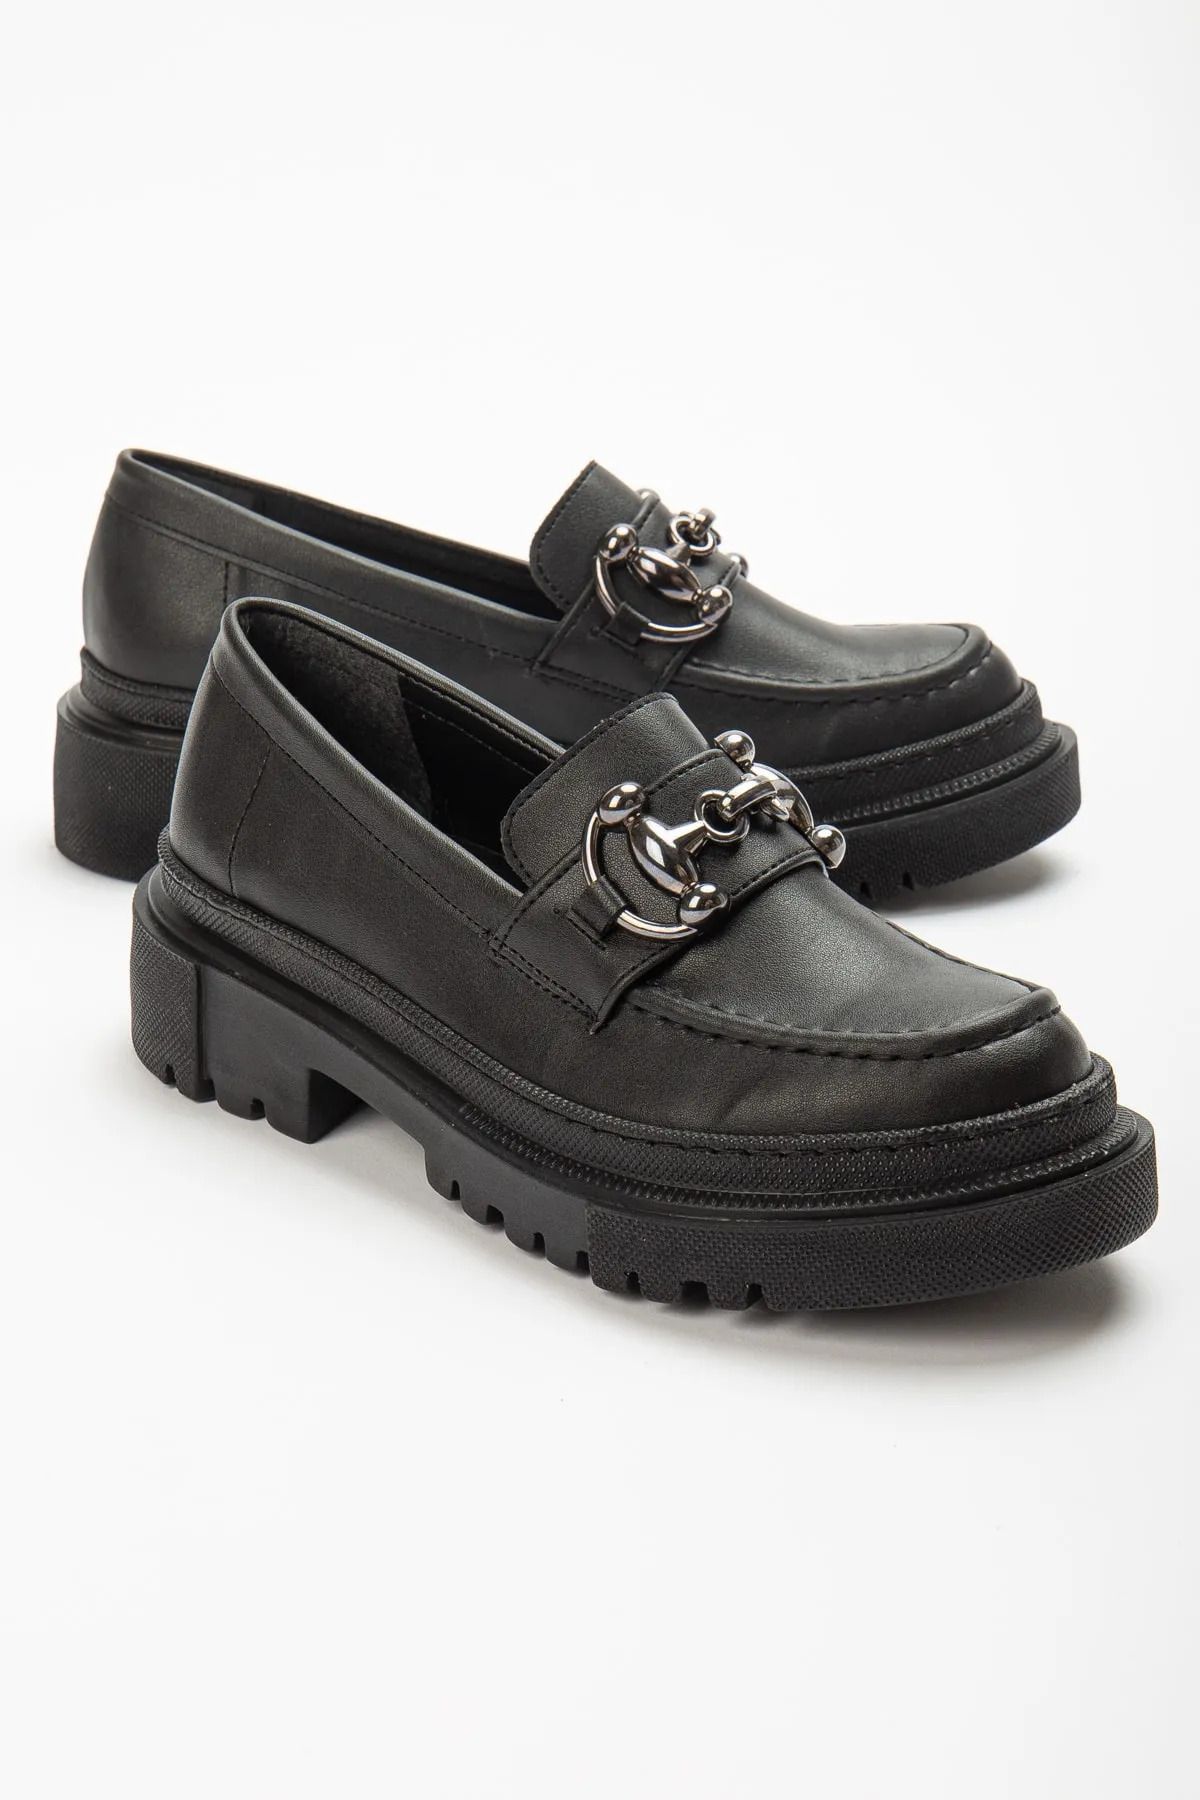 TOBAİ - Kadın Loafer Tokalı Kalın Taban Siyah Babet Ayakkabı